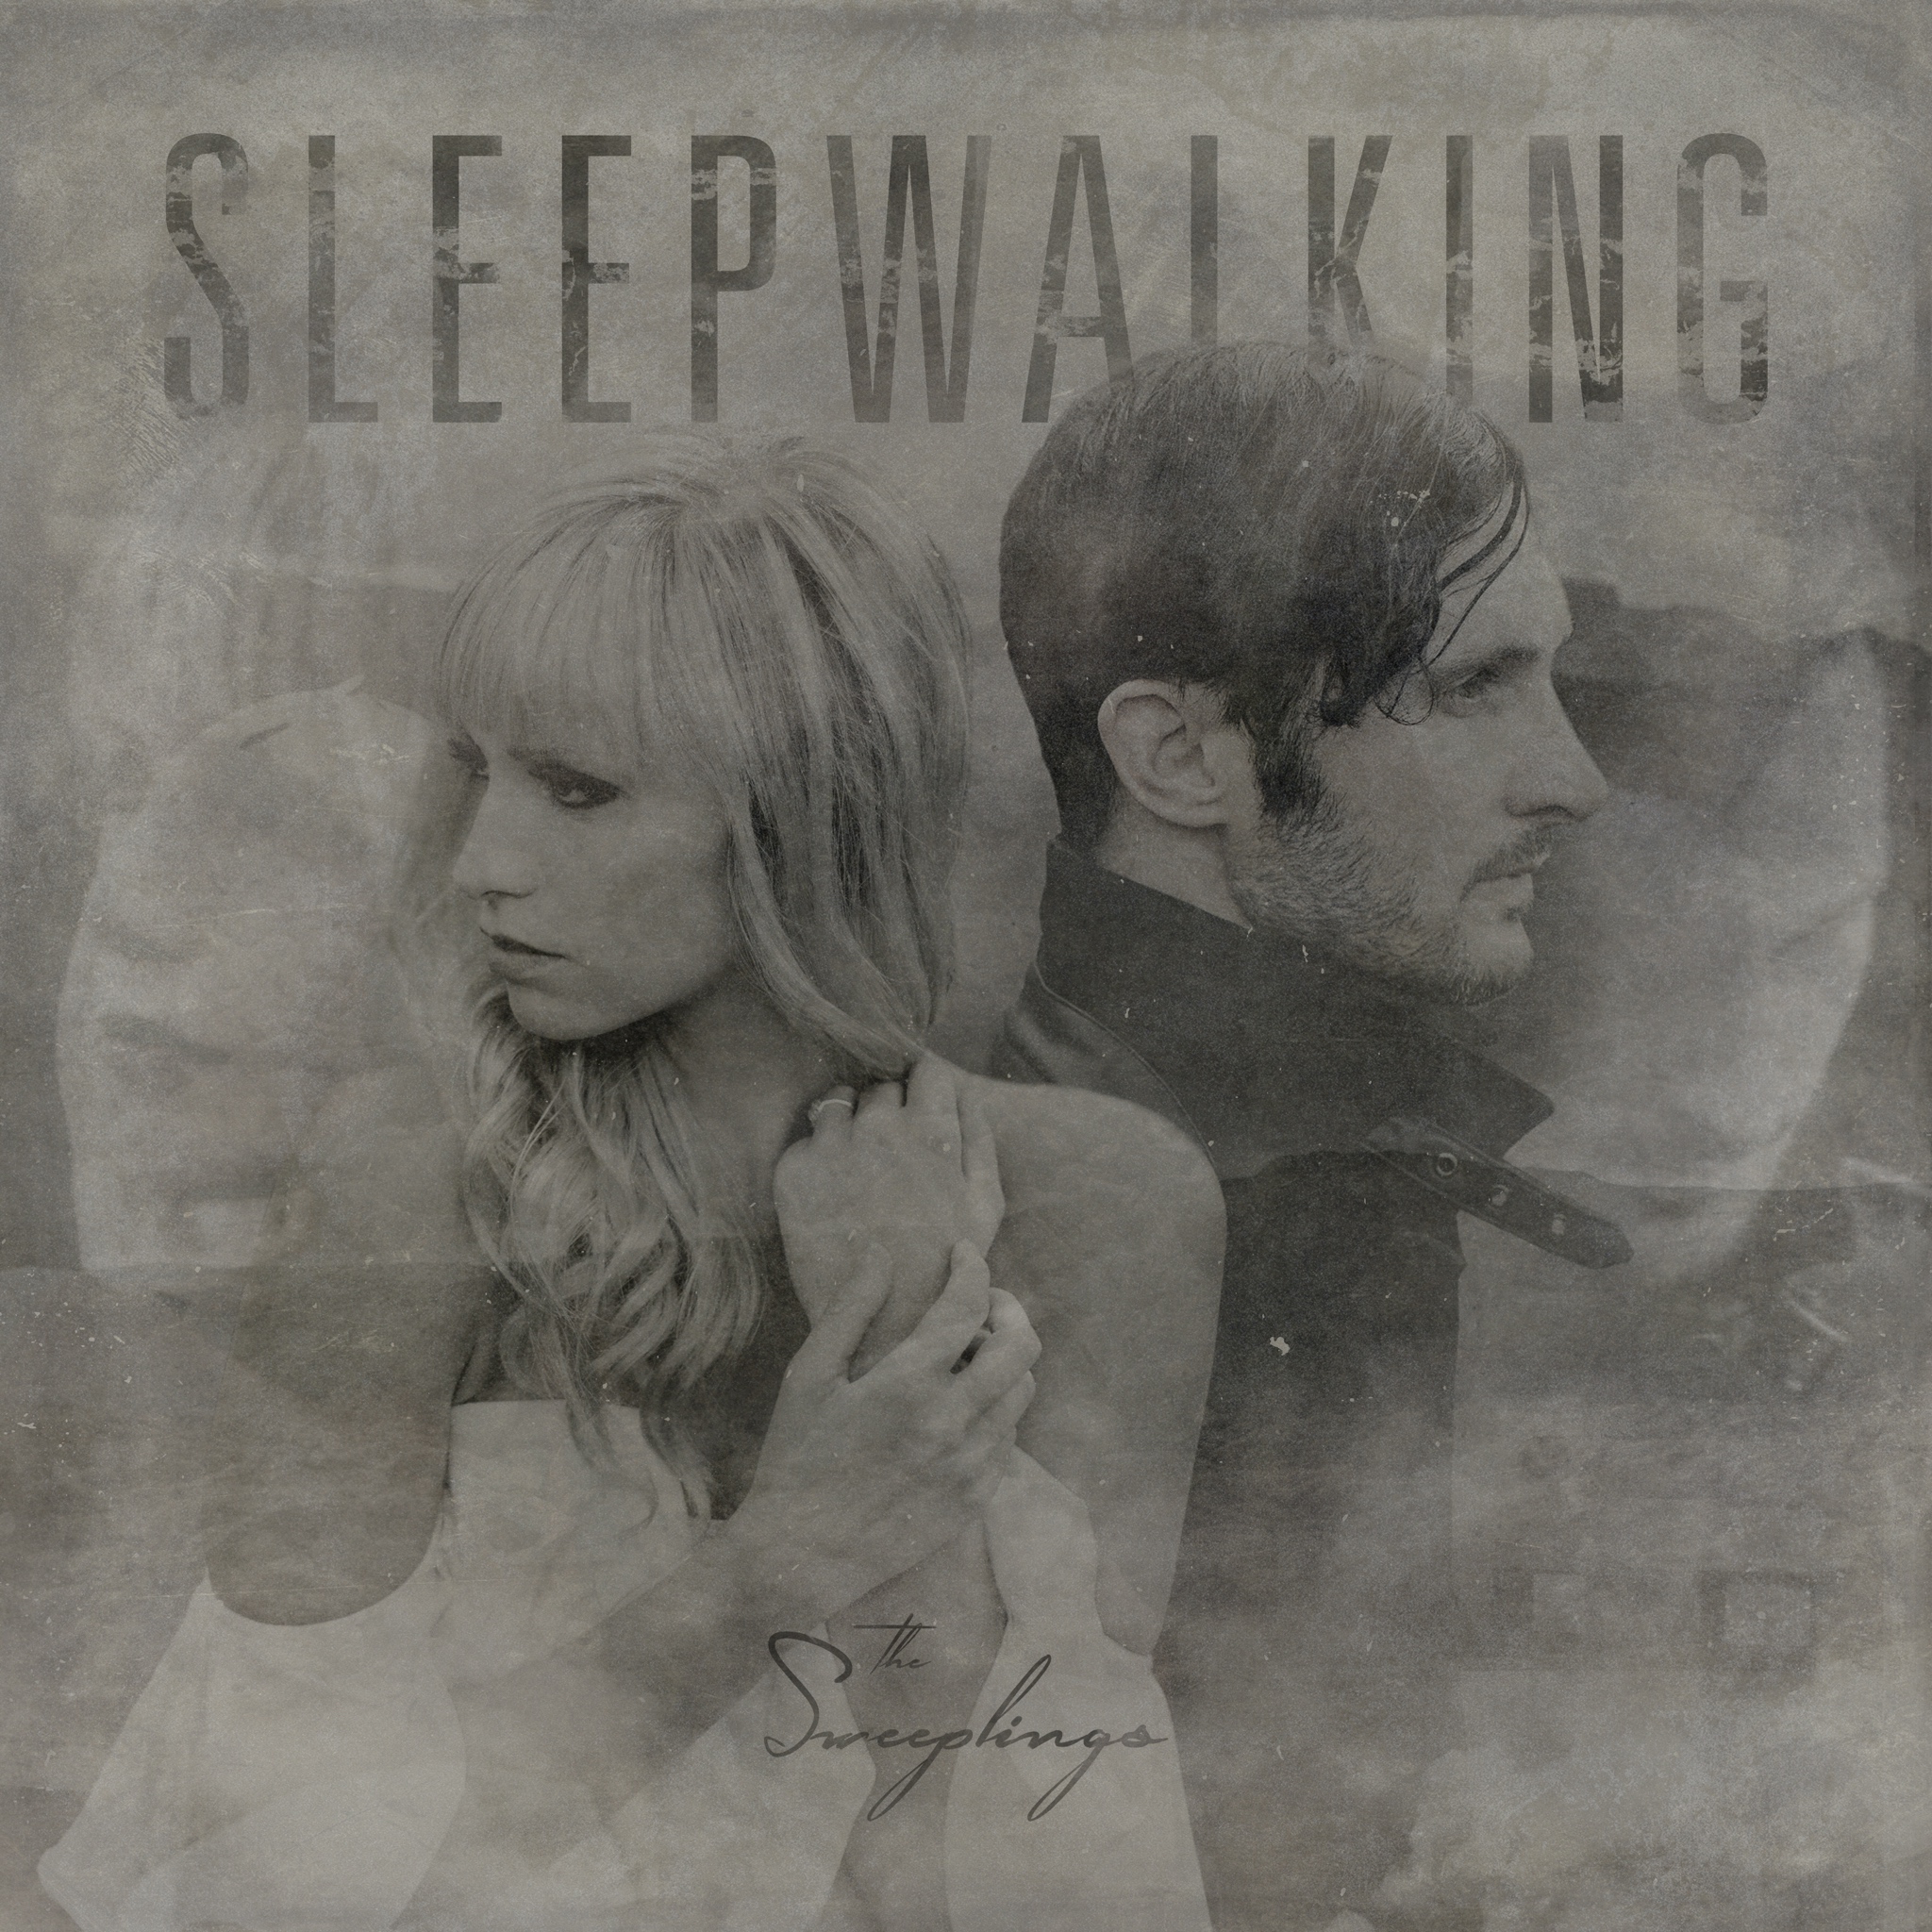 Sleepwalking - The Sweeplings